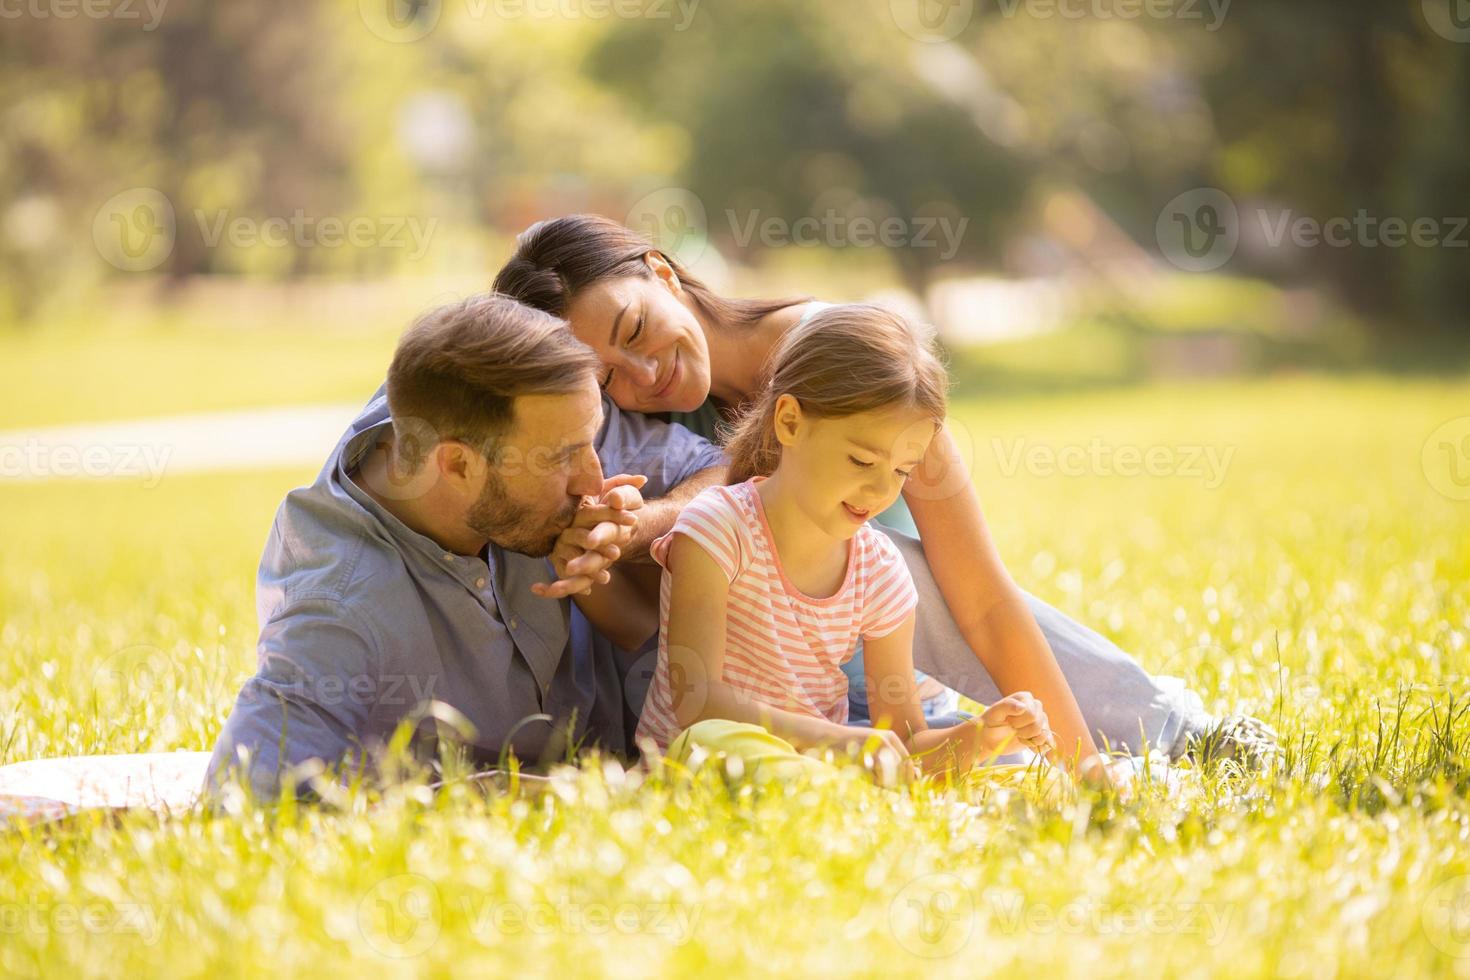 jeune famille heureuse avec une petite fille mignonne s'amusant dans le parc par une journée ensoleillée photo